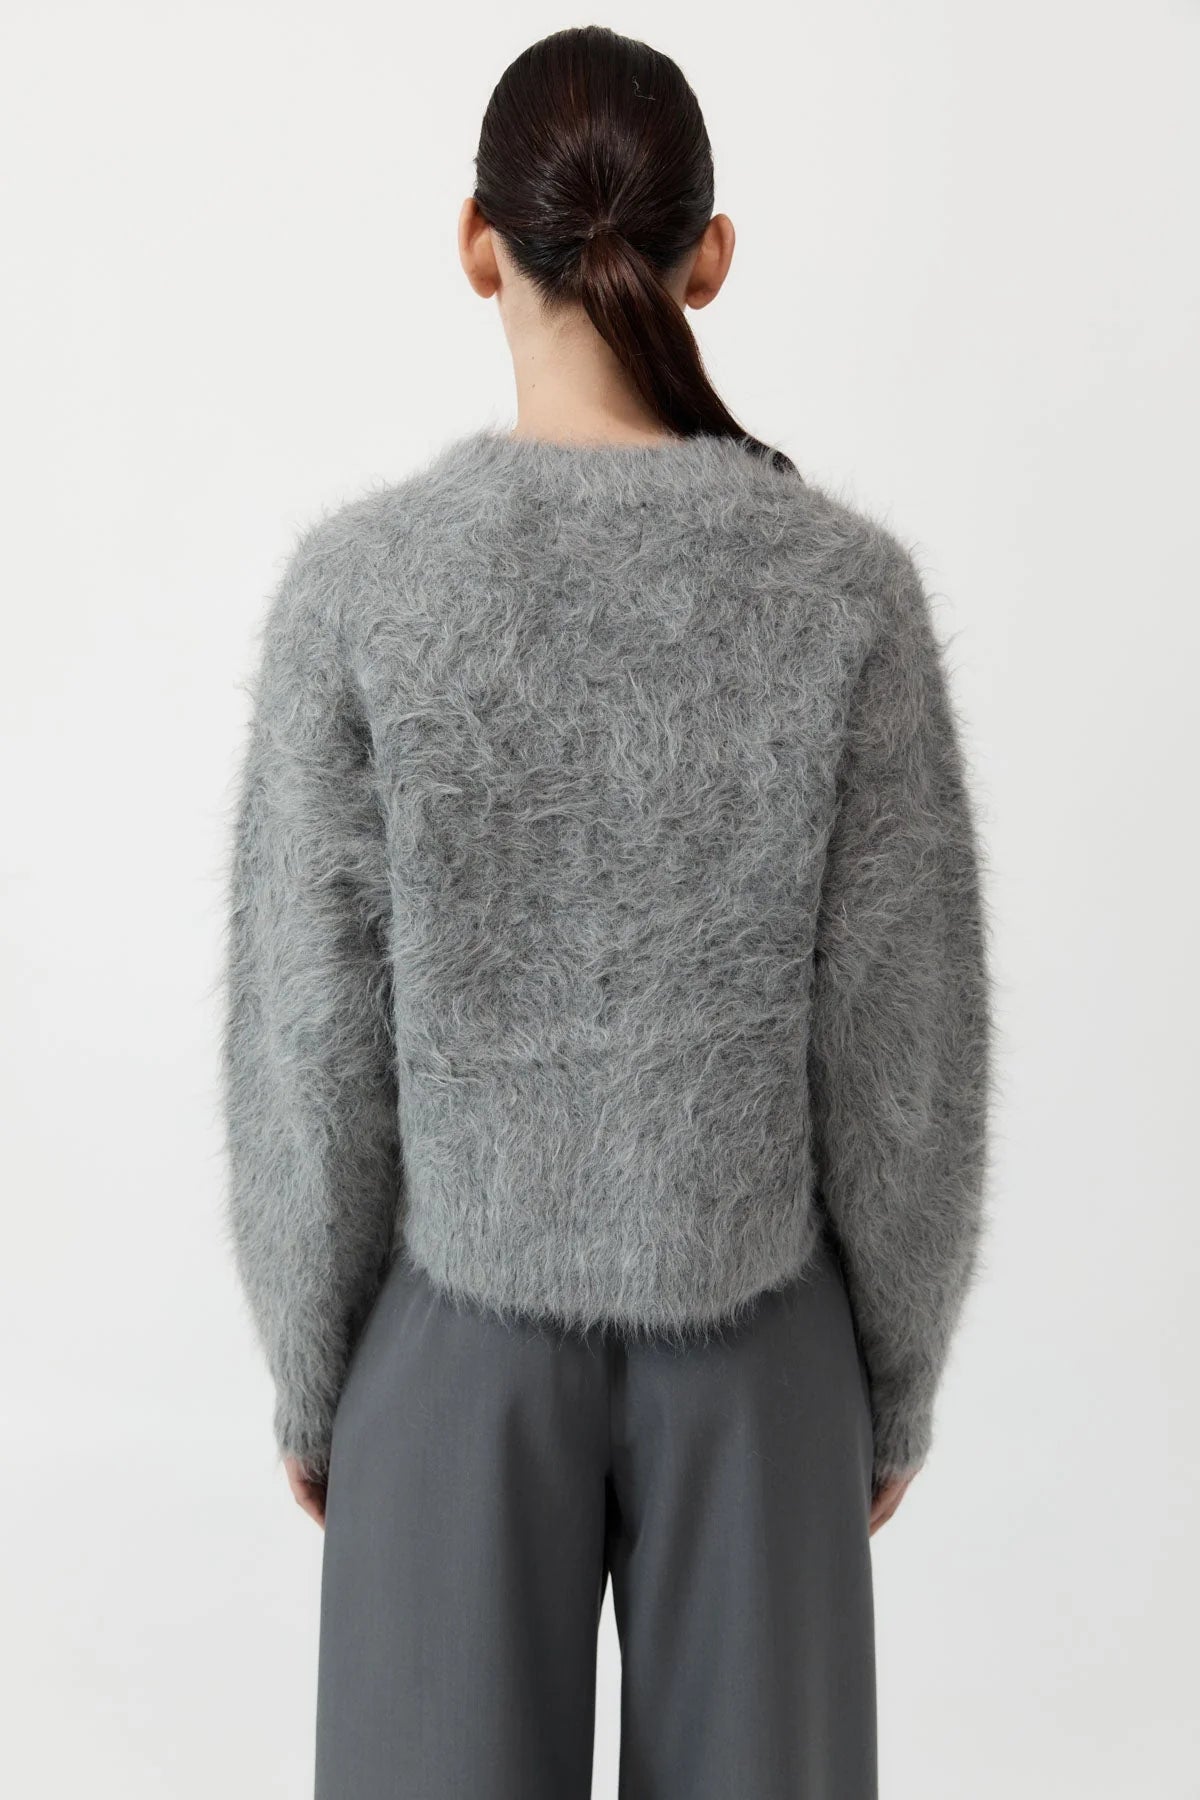 Alpaca Sweater